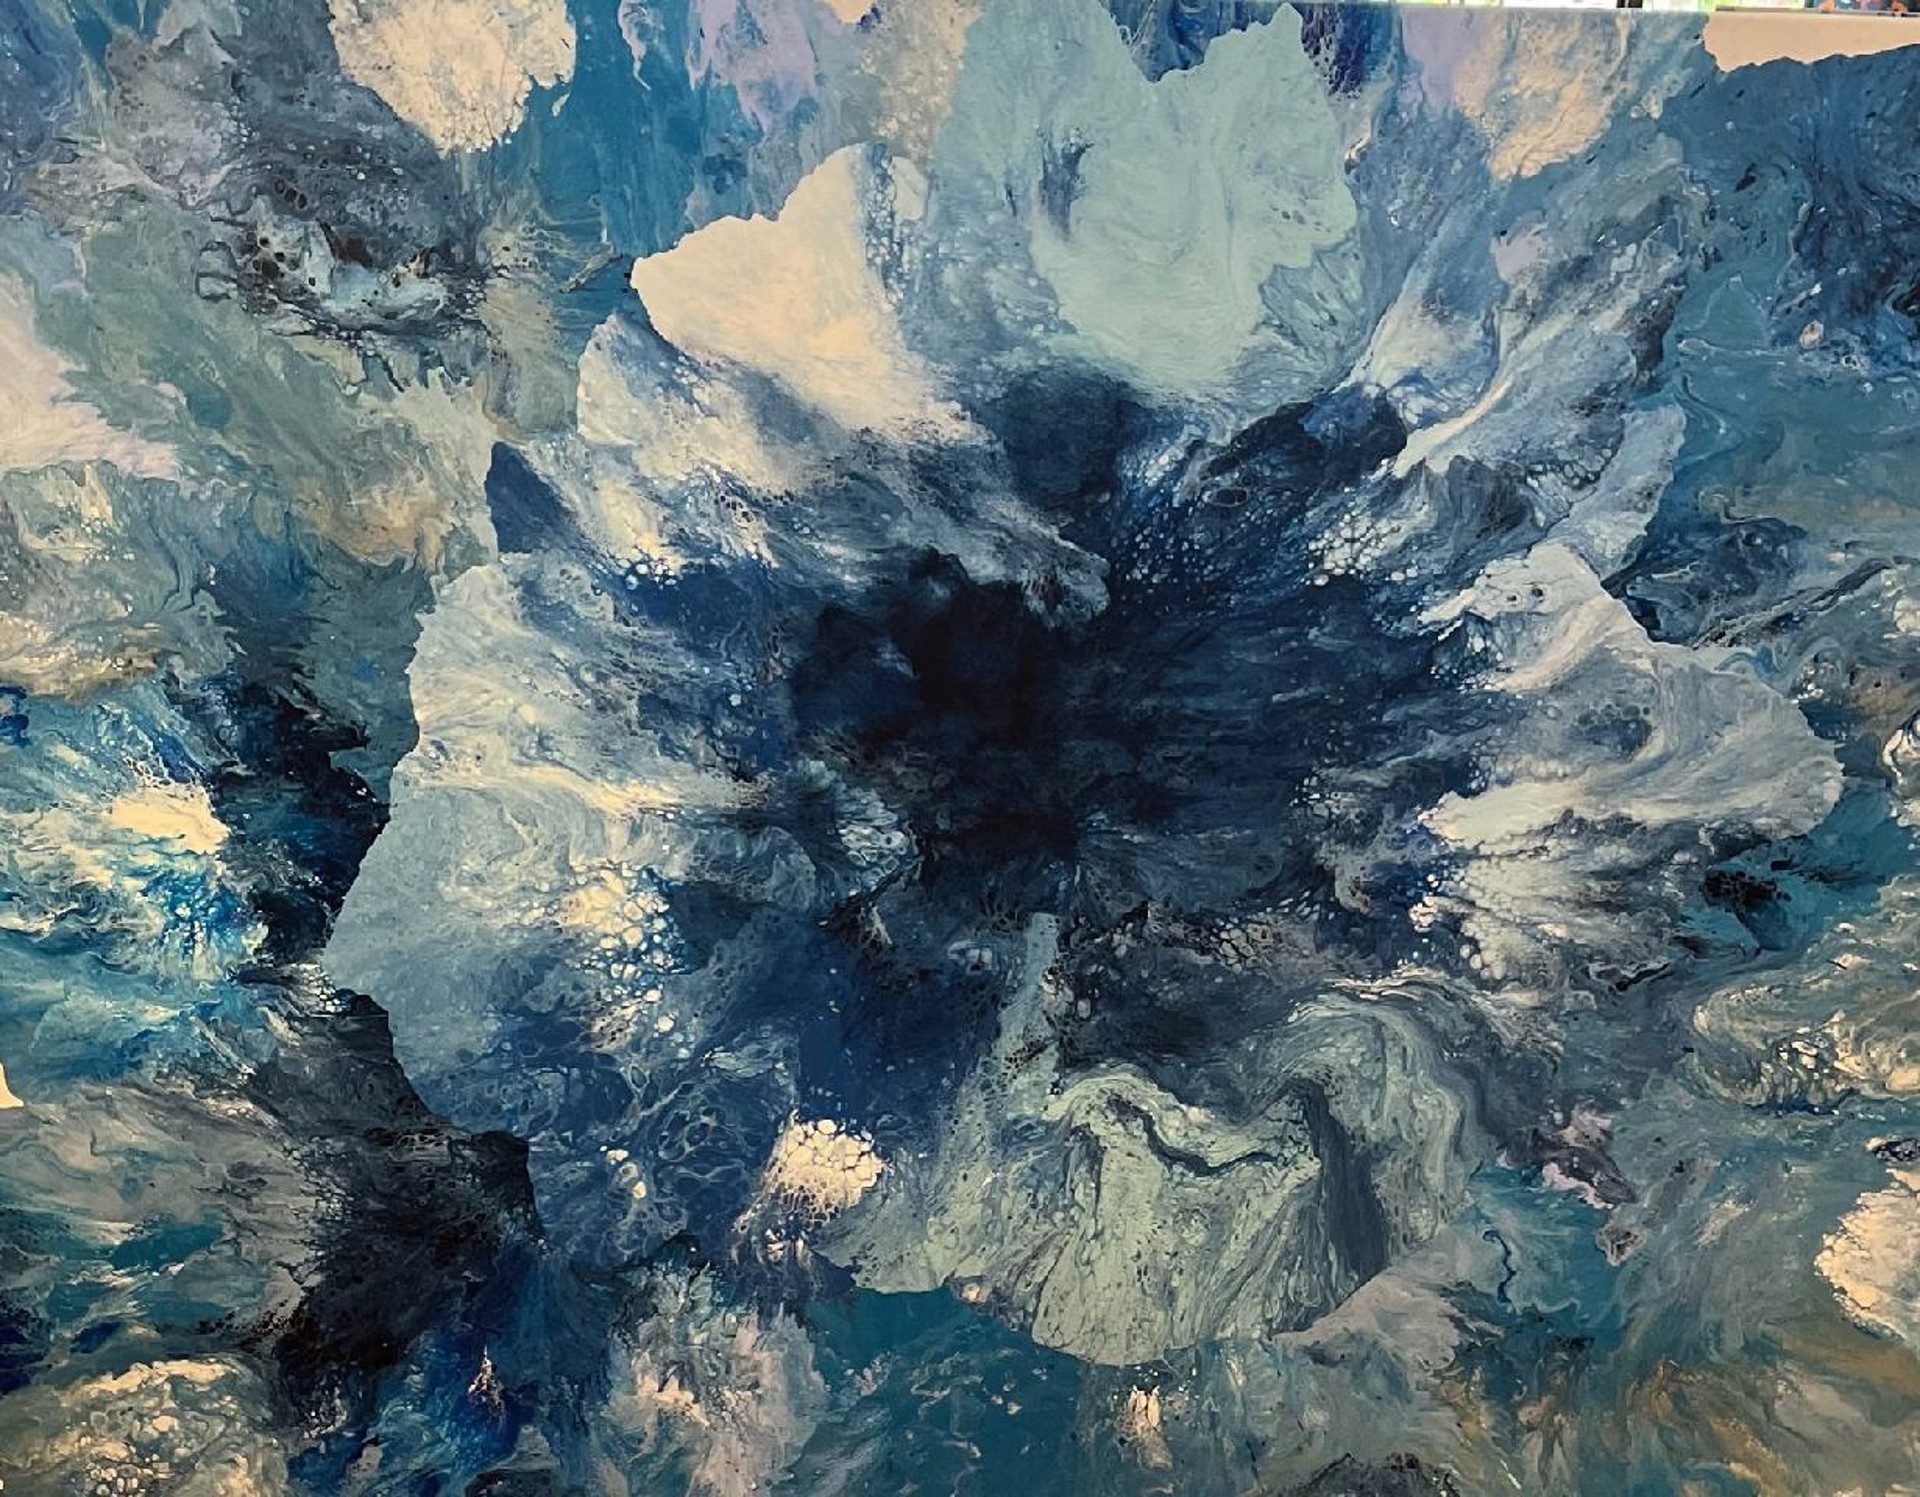 Oceanic Floral Explosion by Debbie Dannheisser